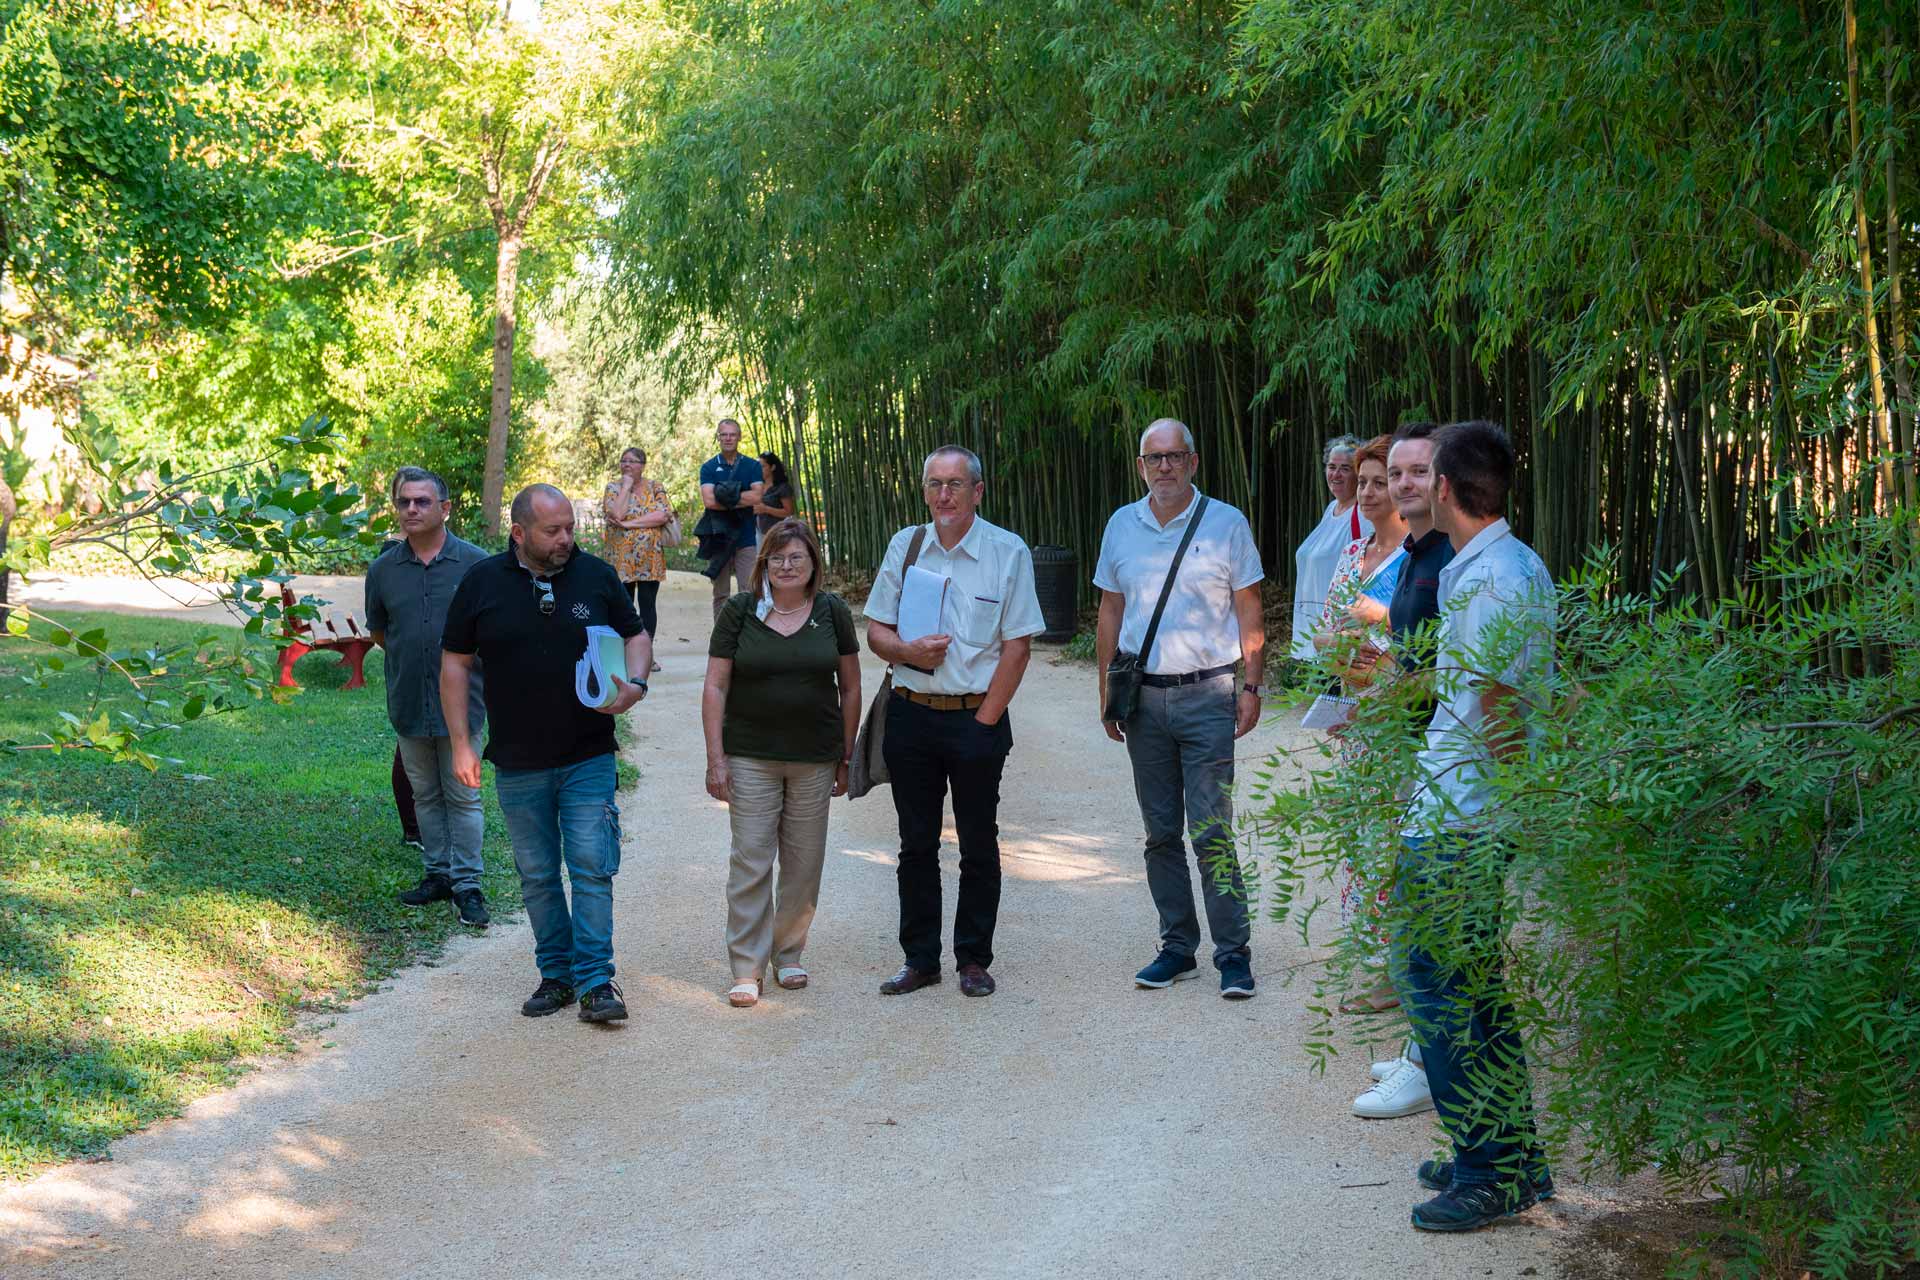 L'écrin de verdure du parc de la Tour Vieille a clôturé la visite du jury du concours des Villes et villages fleuris.